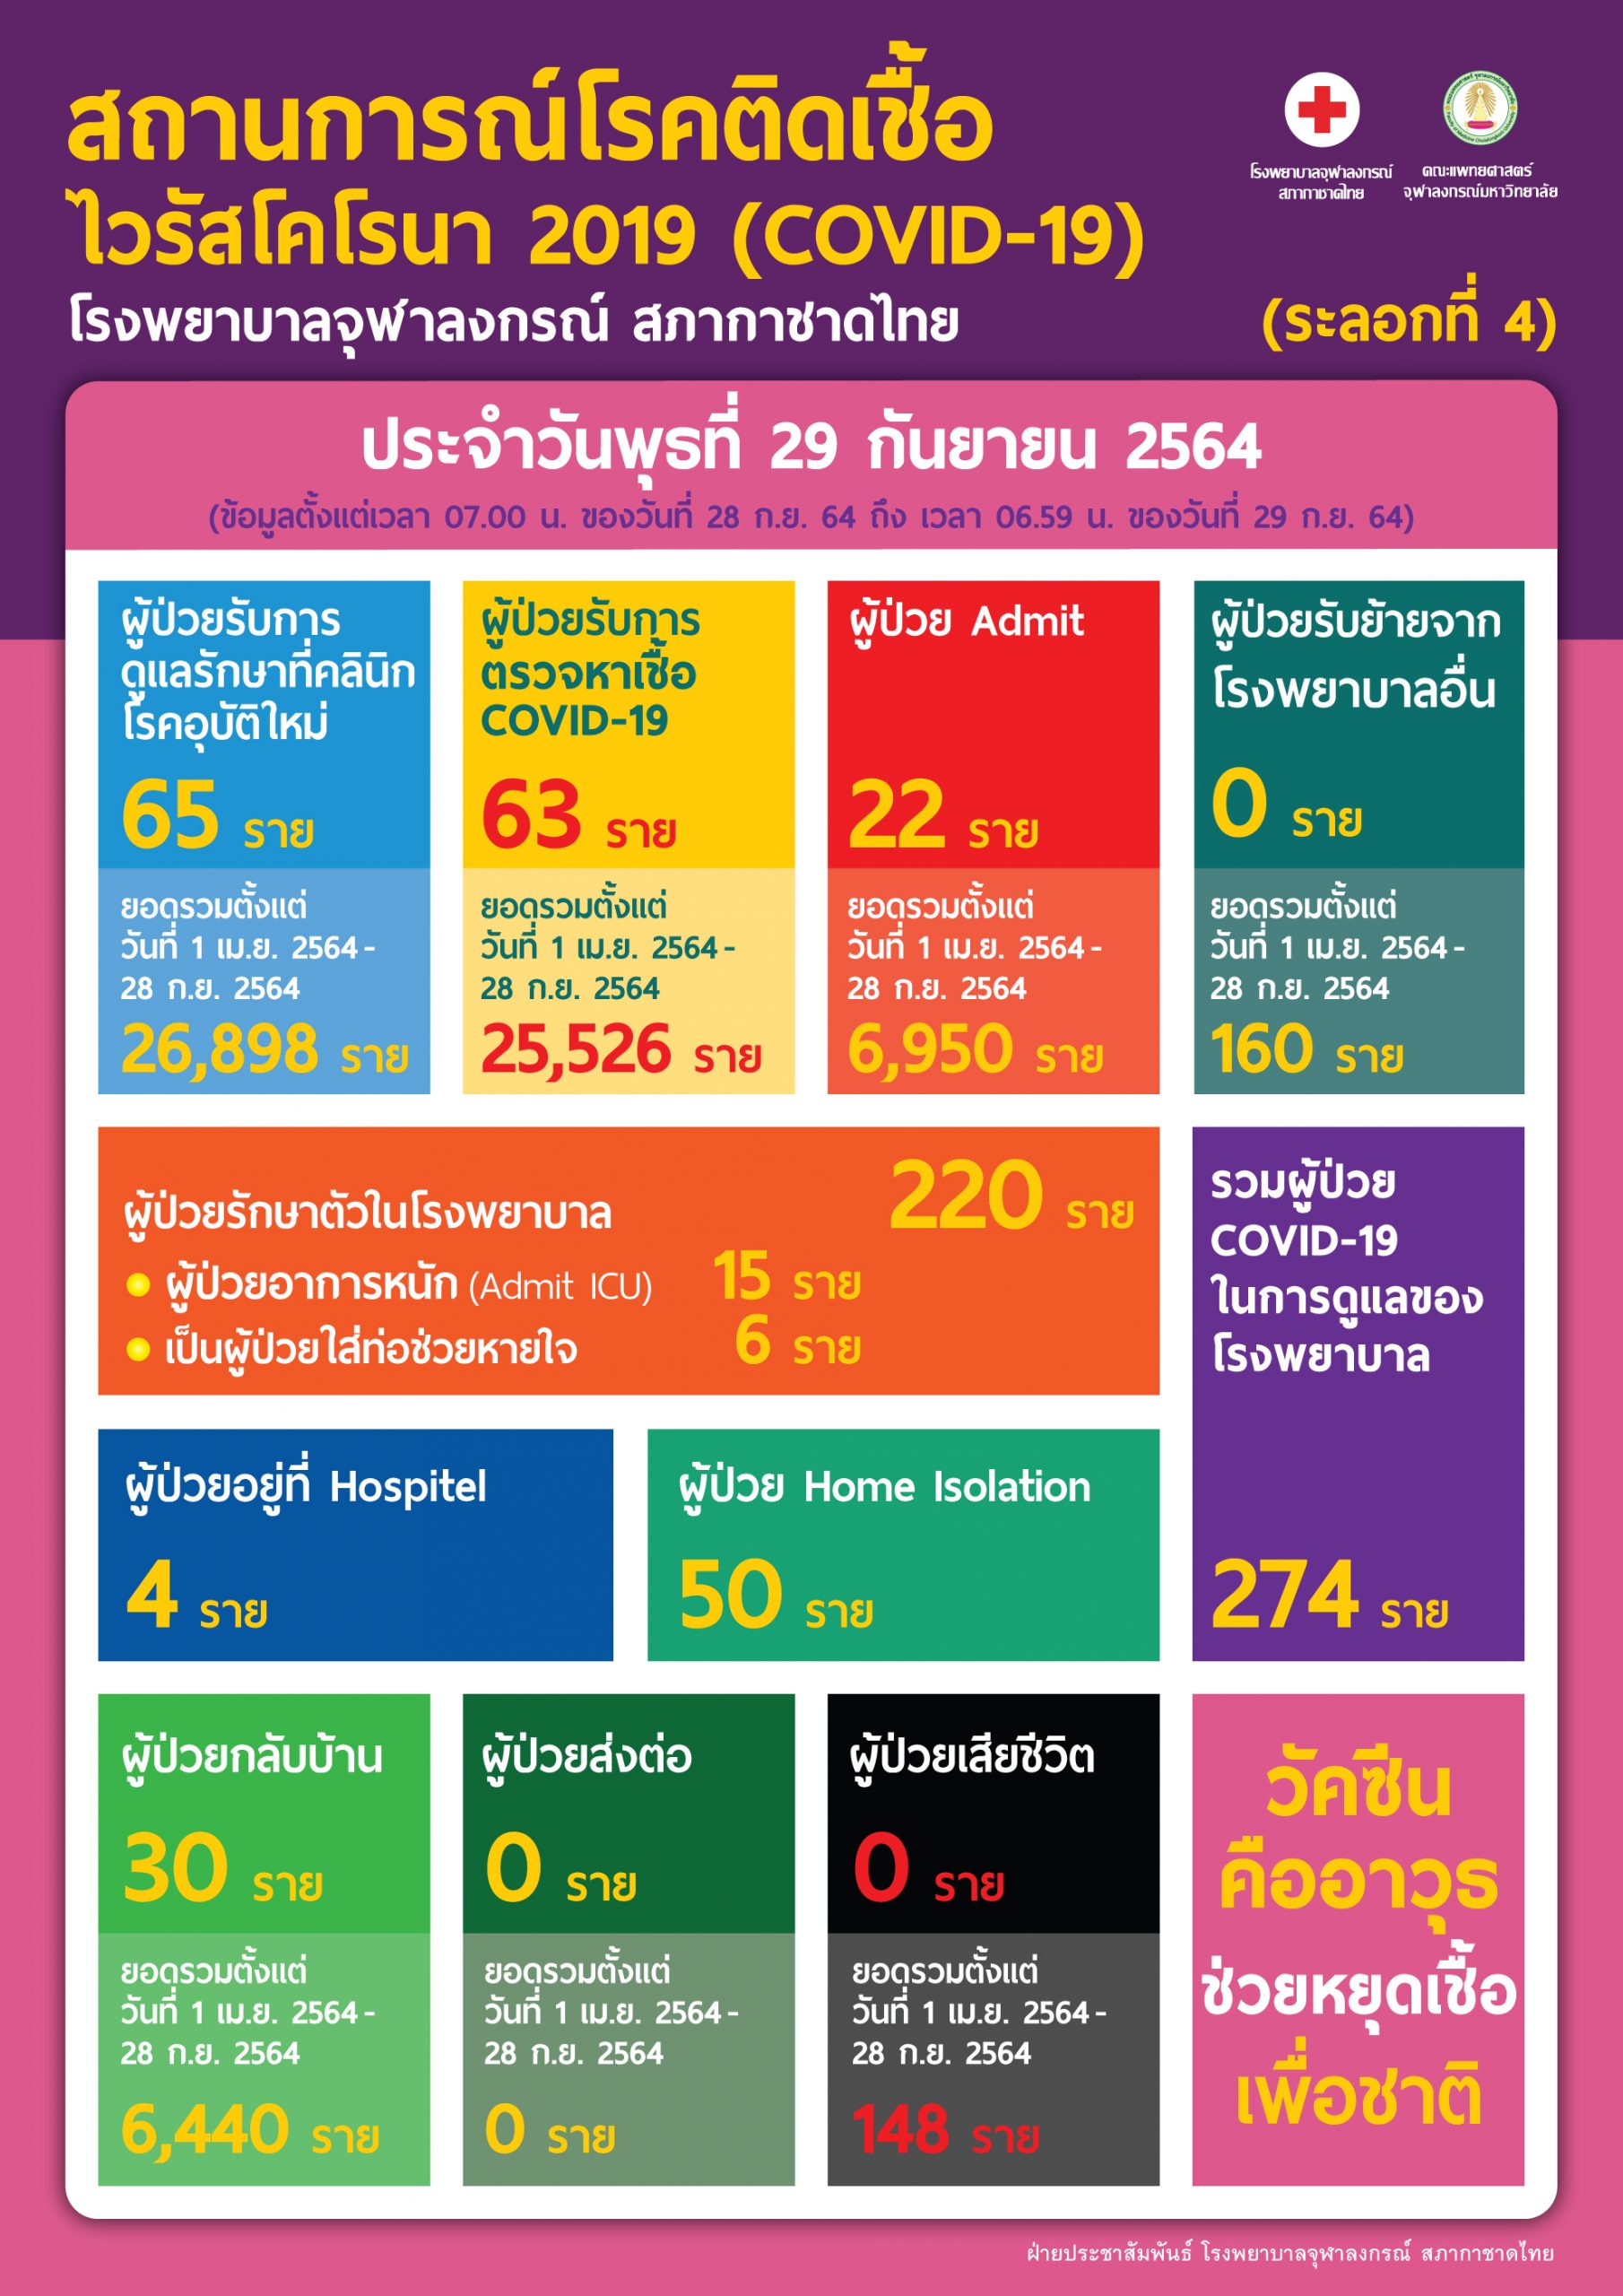 สถานการณ์โรคติดเชื้อไวรัสโคโรนา 2019 (COVID-19) (ระลอกที่ 4) โรงพยาบาลจุฬาลงกรณ์ สภากาชาดไทย ประจำวันพุธที่ 29 กันยายน 2564